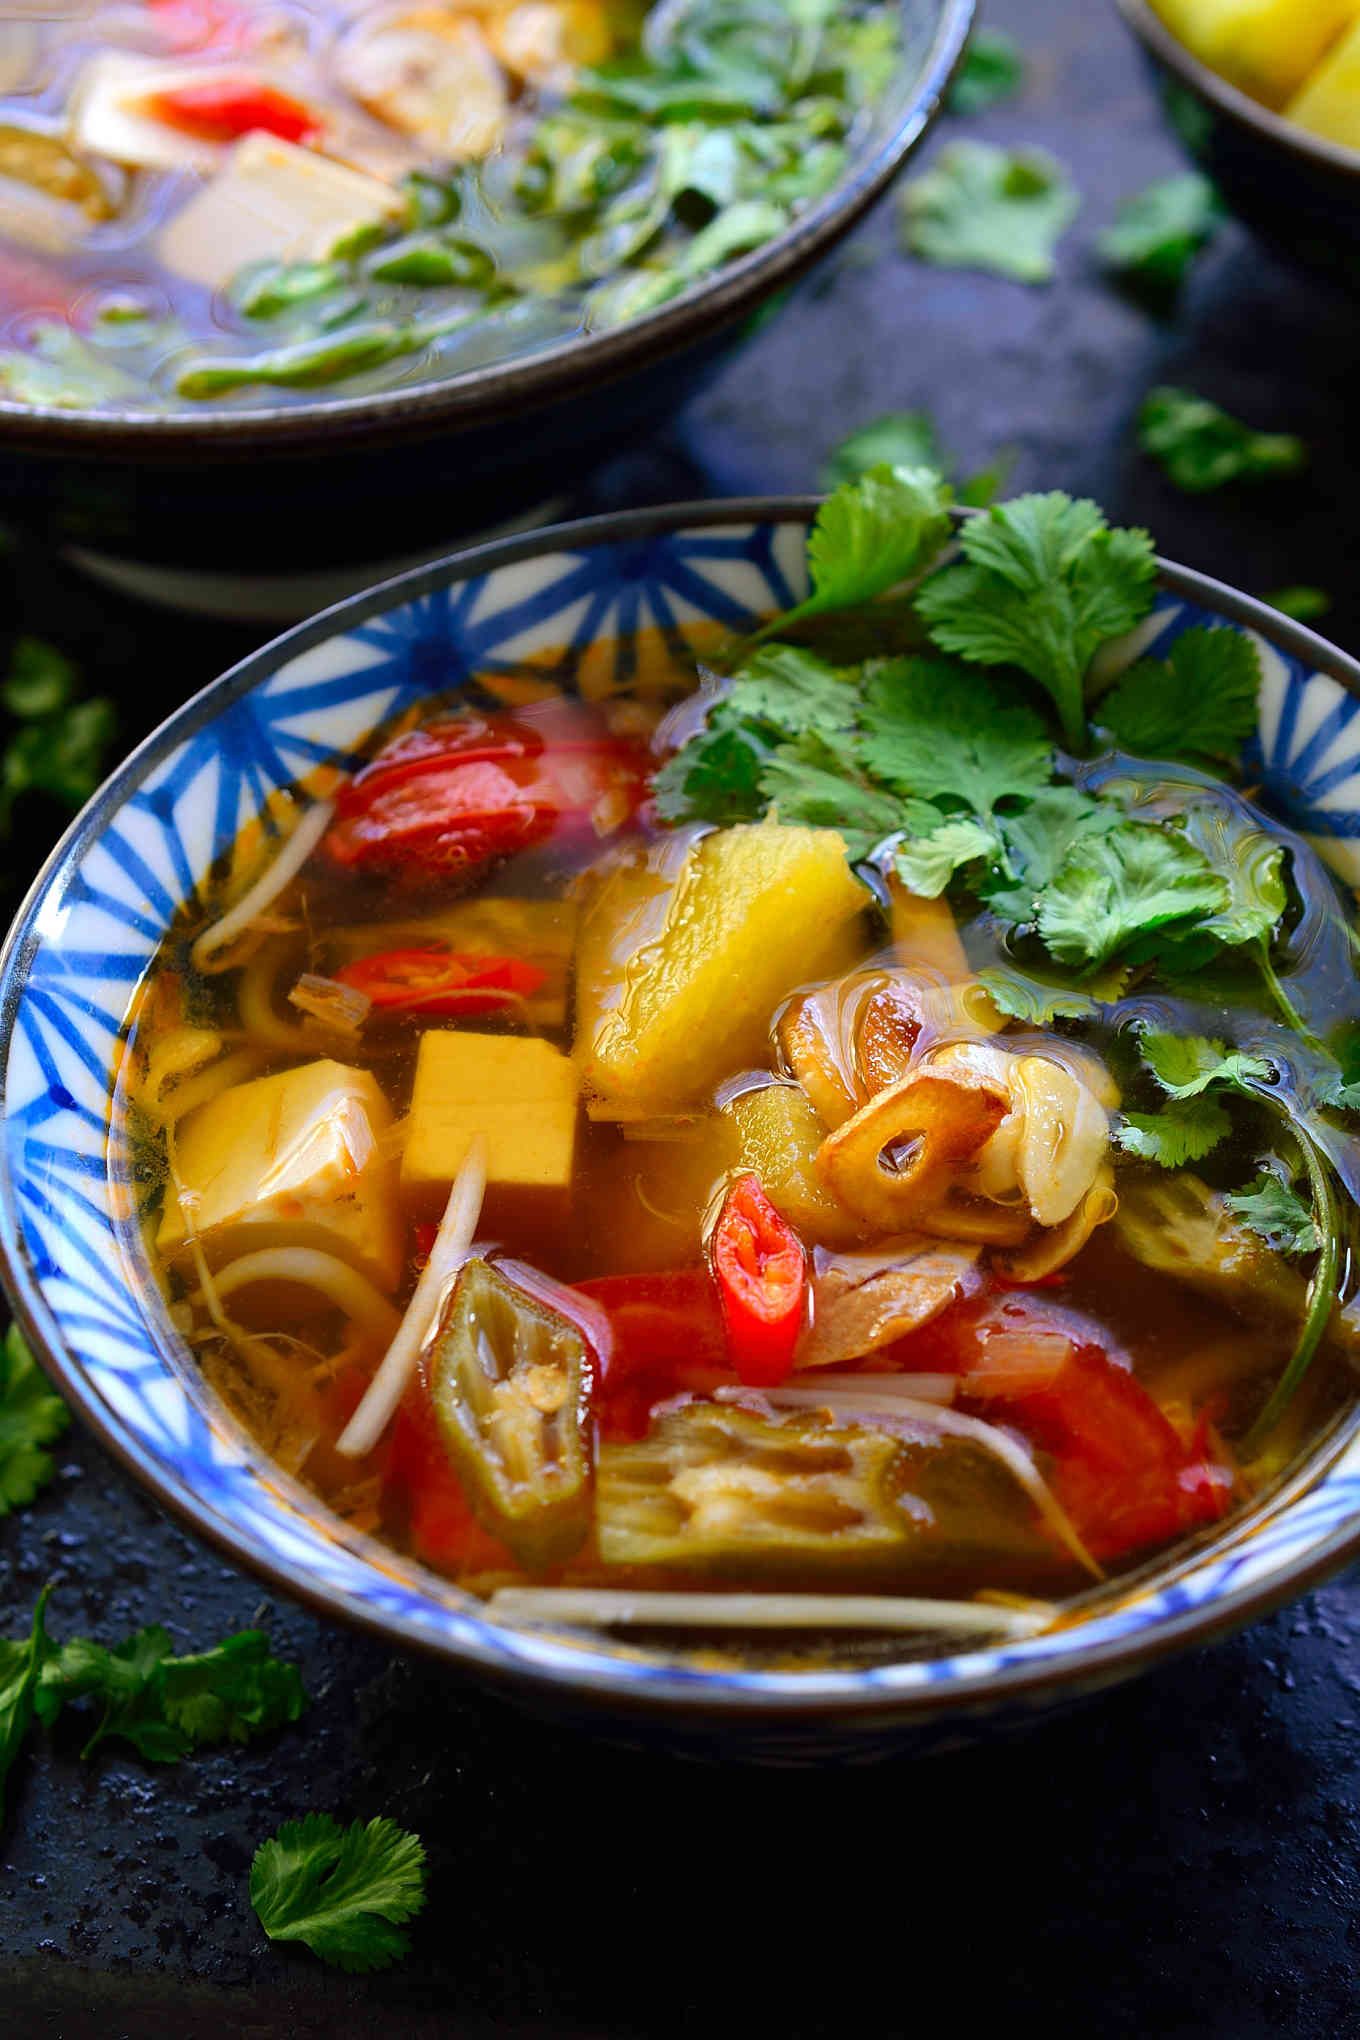 Esta receta de sopa agria vietnamita está lista en tan sólo 15 minutos, y tan llena de sabores y texturas complejas que podría ser la sopa más rica que jamás hayas probado. Esta es una versión vegetariana de canh chua con tamarindo, piña, okra y tofu sedoso. Parece una combinación extraña, pero estoy segura de que se convertirá rápidamente en tu nueva sopa favorita!